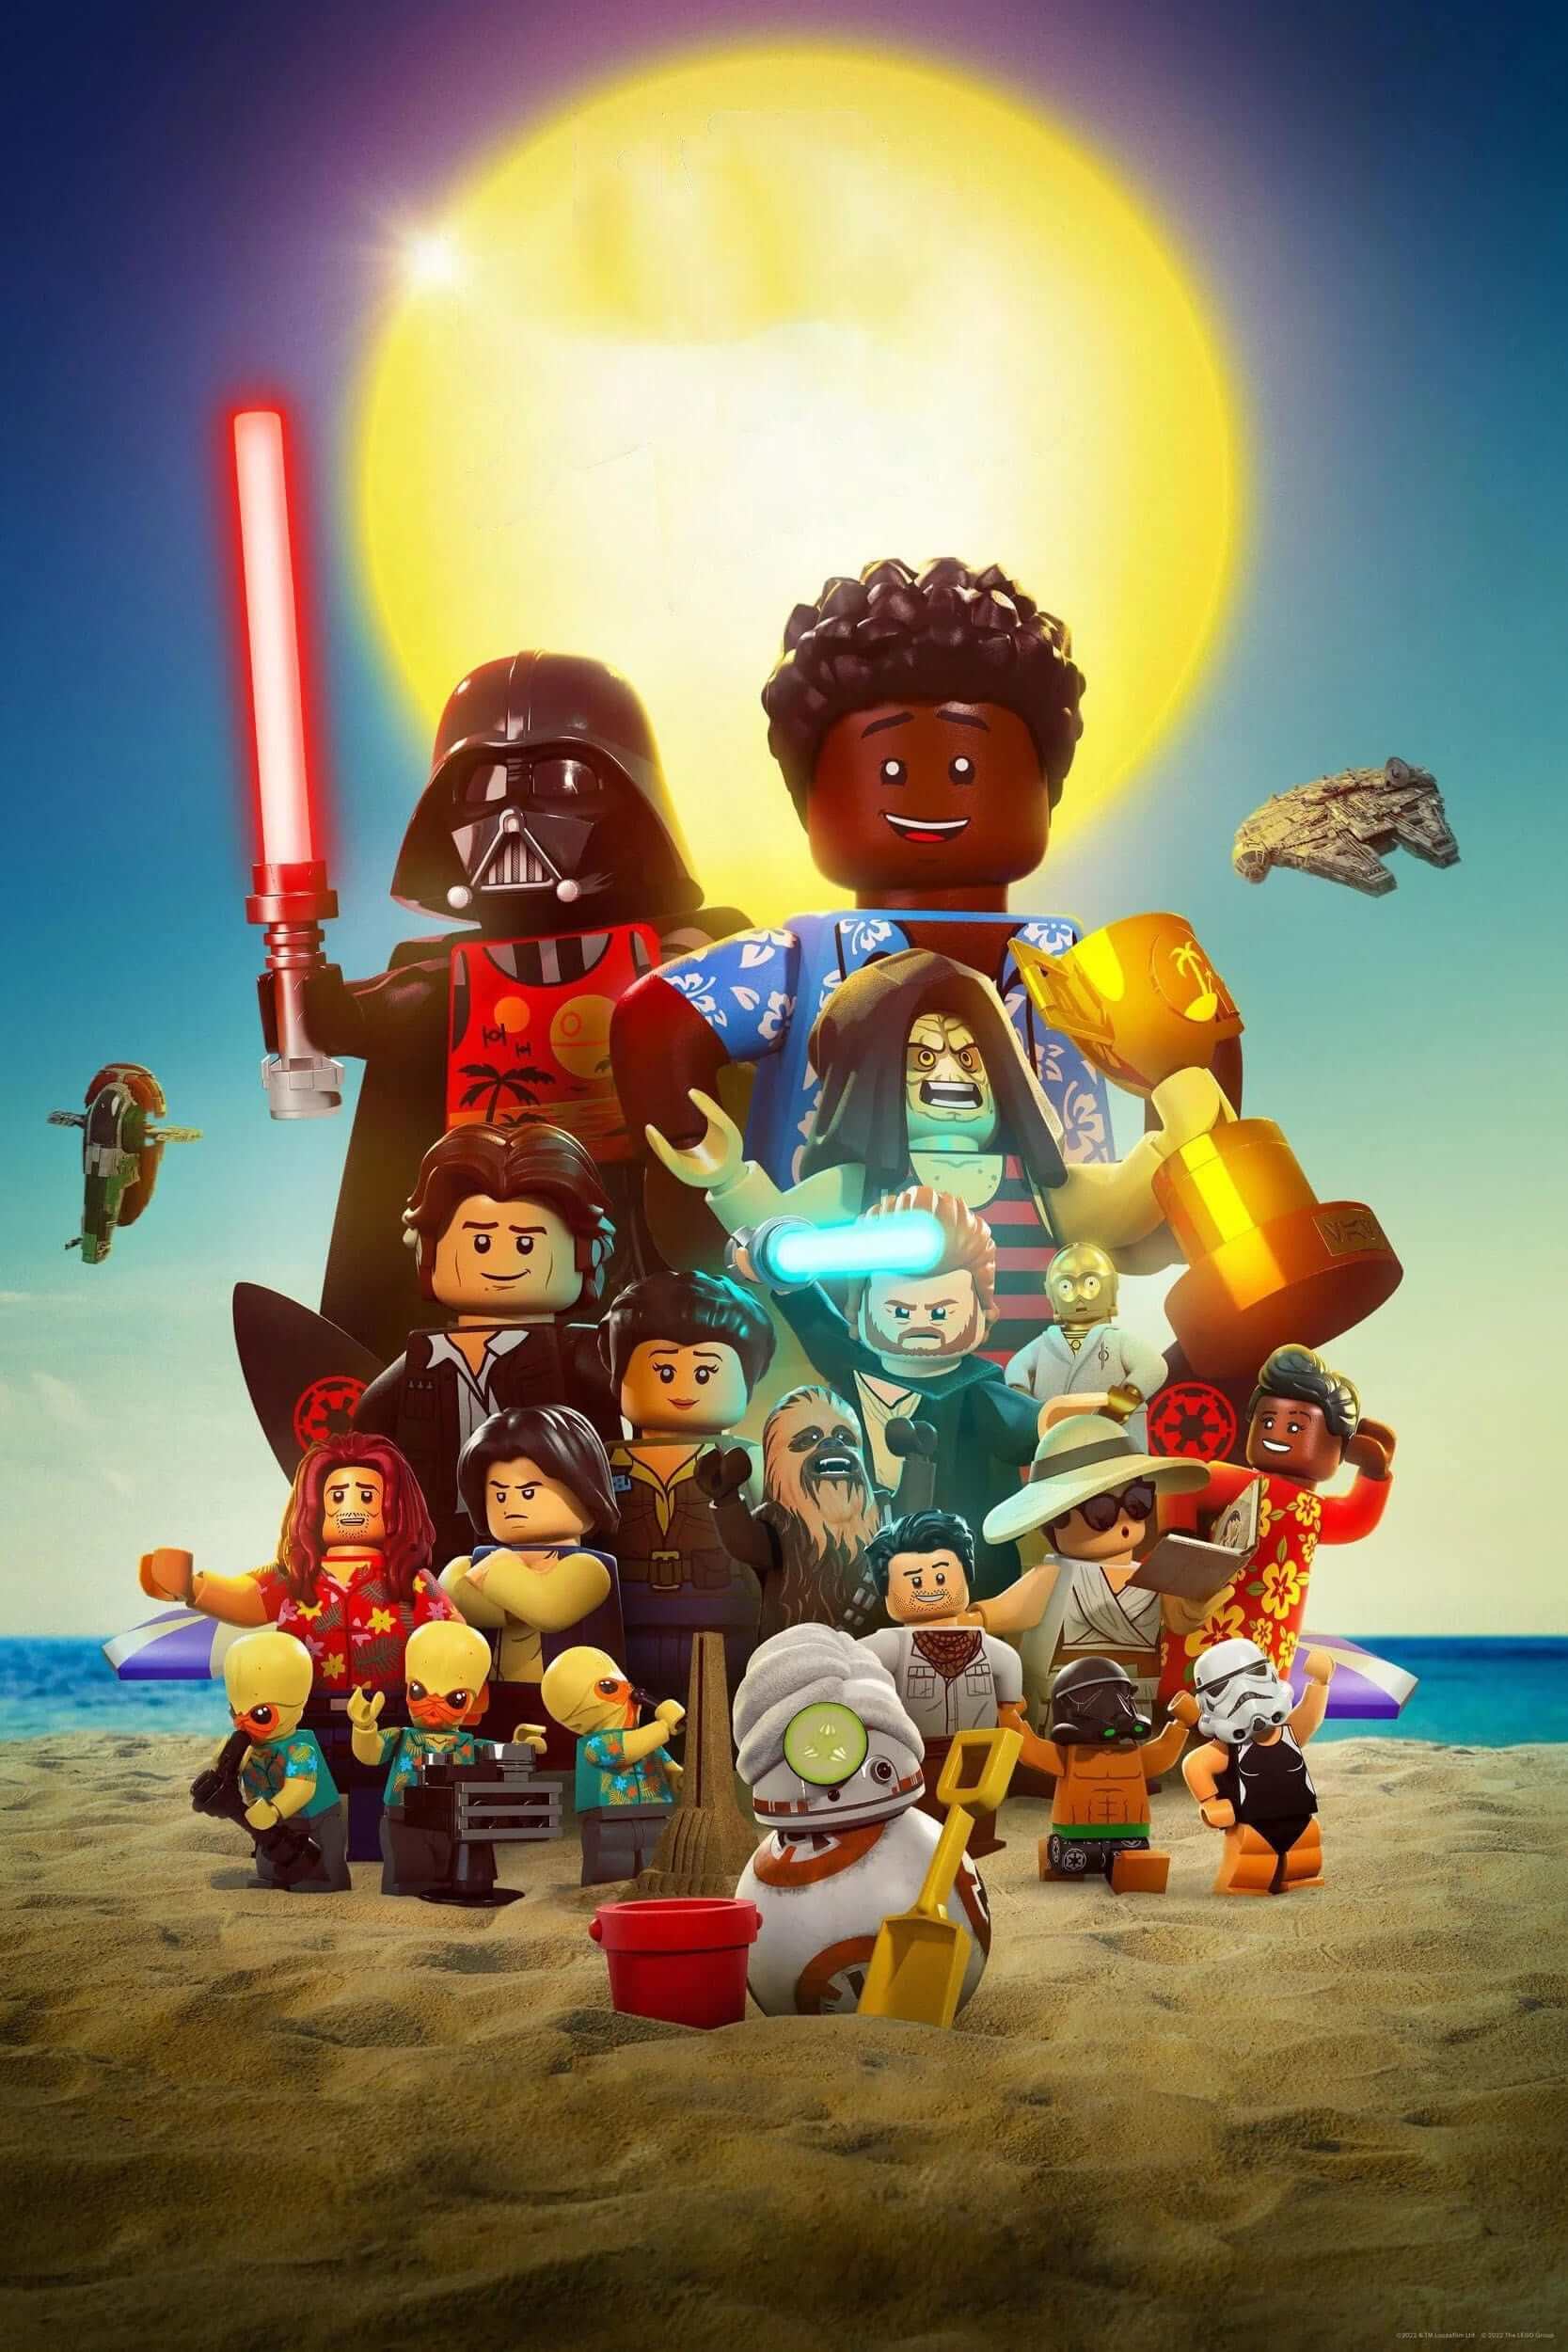 لگو جنگ ستارگان: تعطیلات تابستانی (Lego Star Wars Summer Vacation)